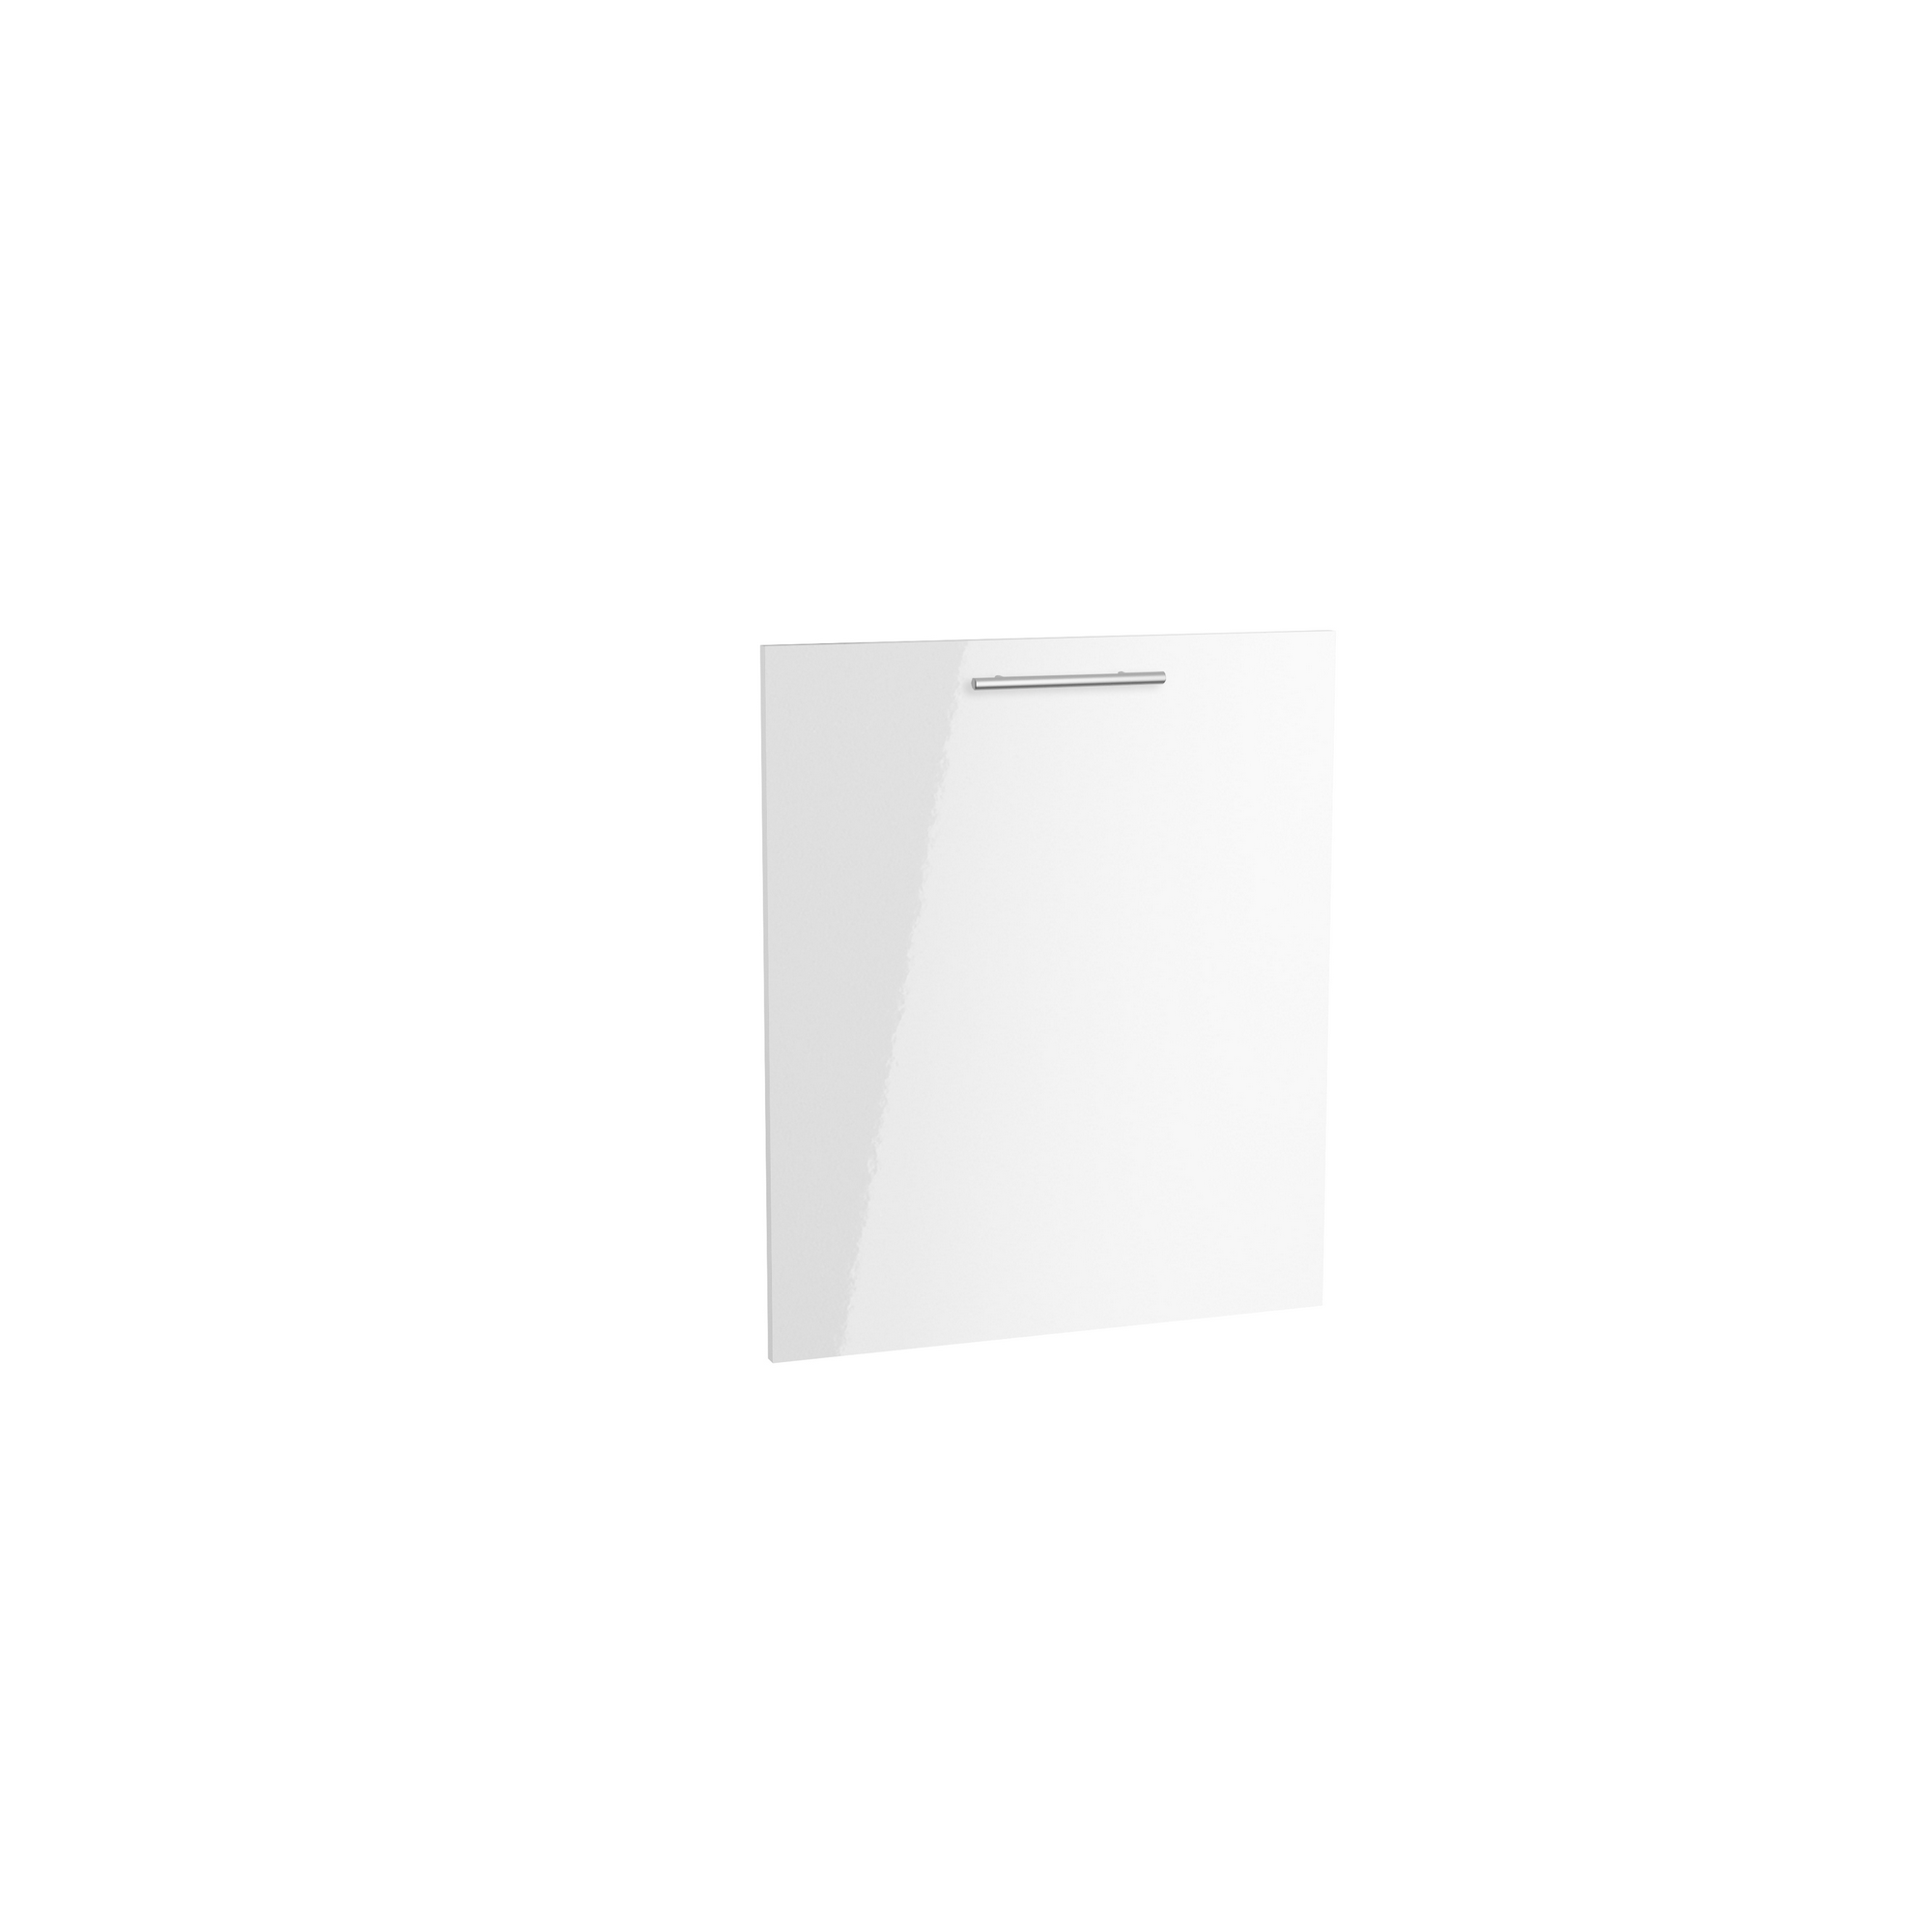 Tür für vollintegrierten Geschirrspüler 'Optikomfort Rurik986' weiß 59,6 x 70 x 1,6 cm + product picture